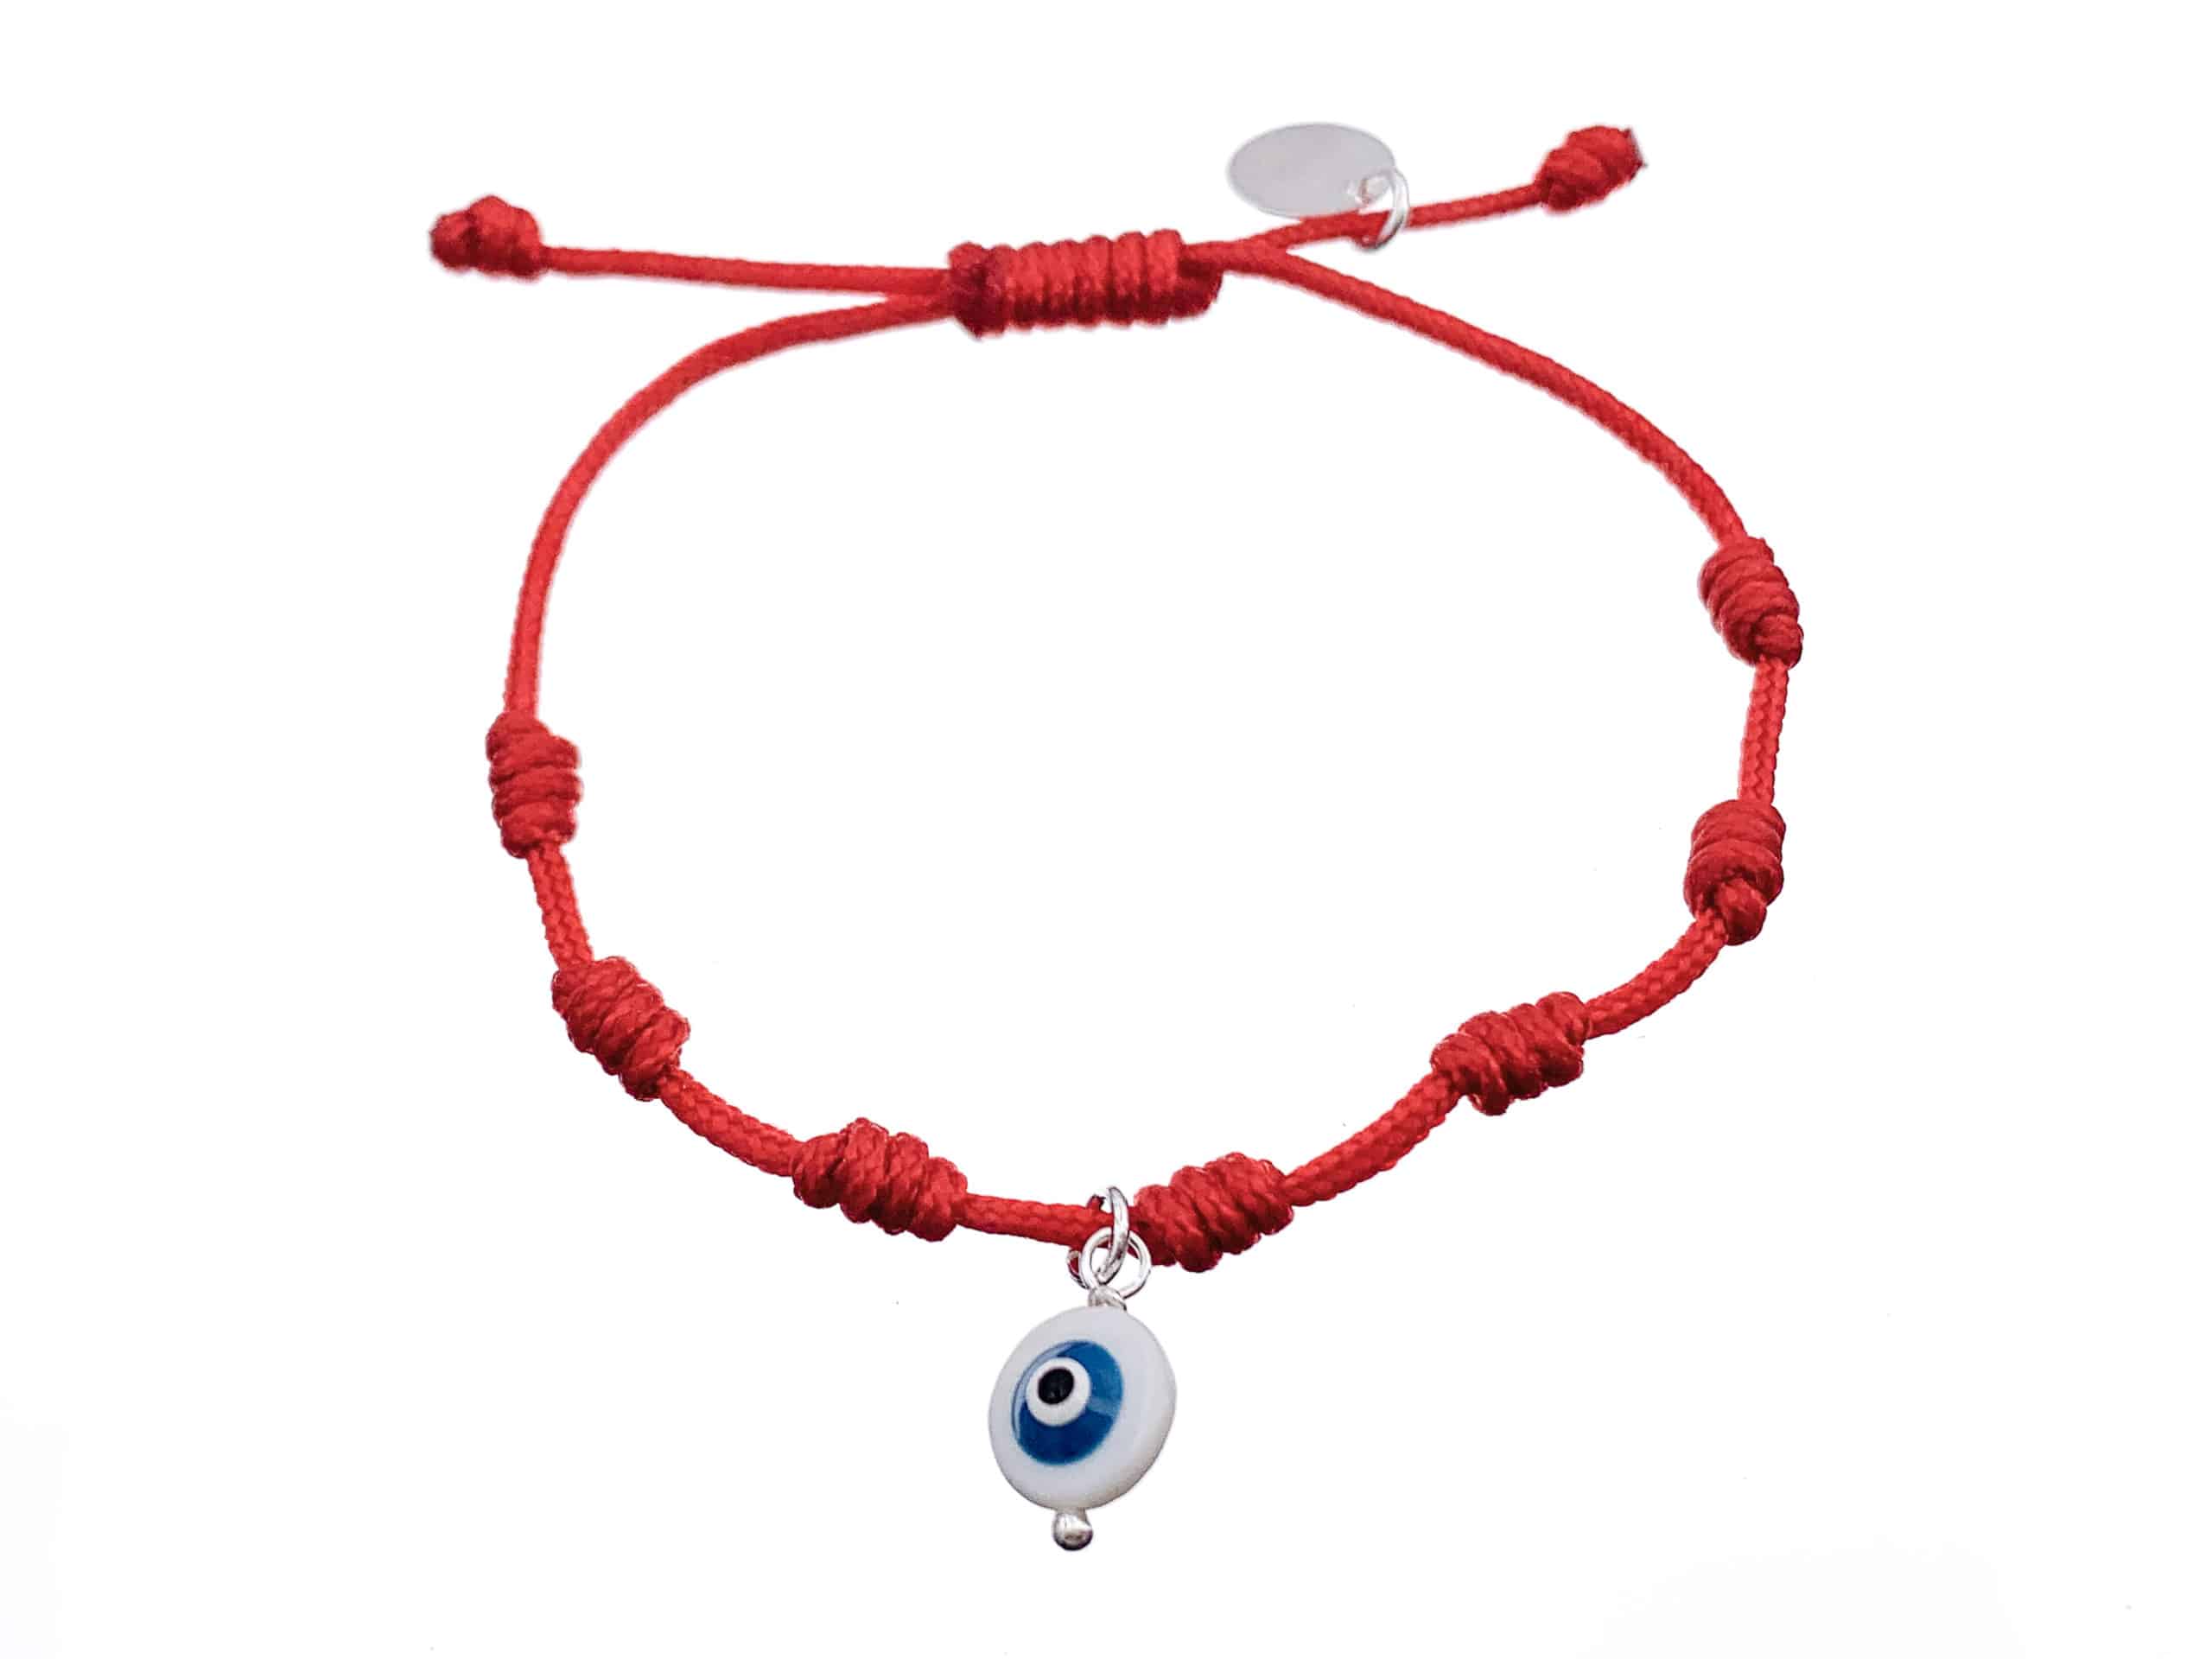 Pulsera roja de Siete nudos - Cuchicuchi personalizados joyas